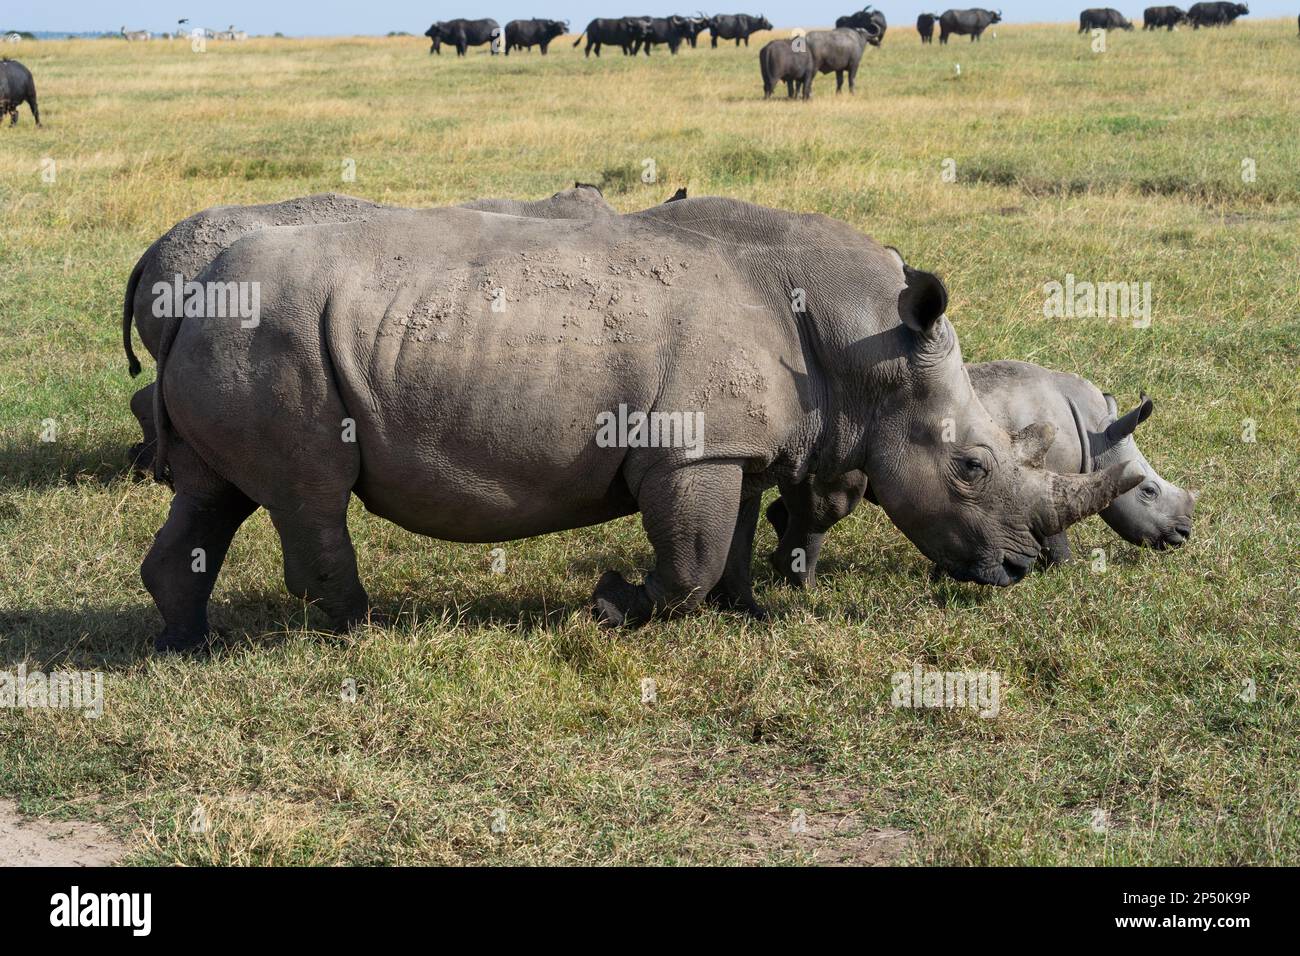 Madre y bebé del rinoceronte blanco del sur en OL Pejeta Conservancy Kenia Foto de stock